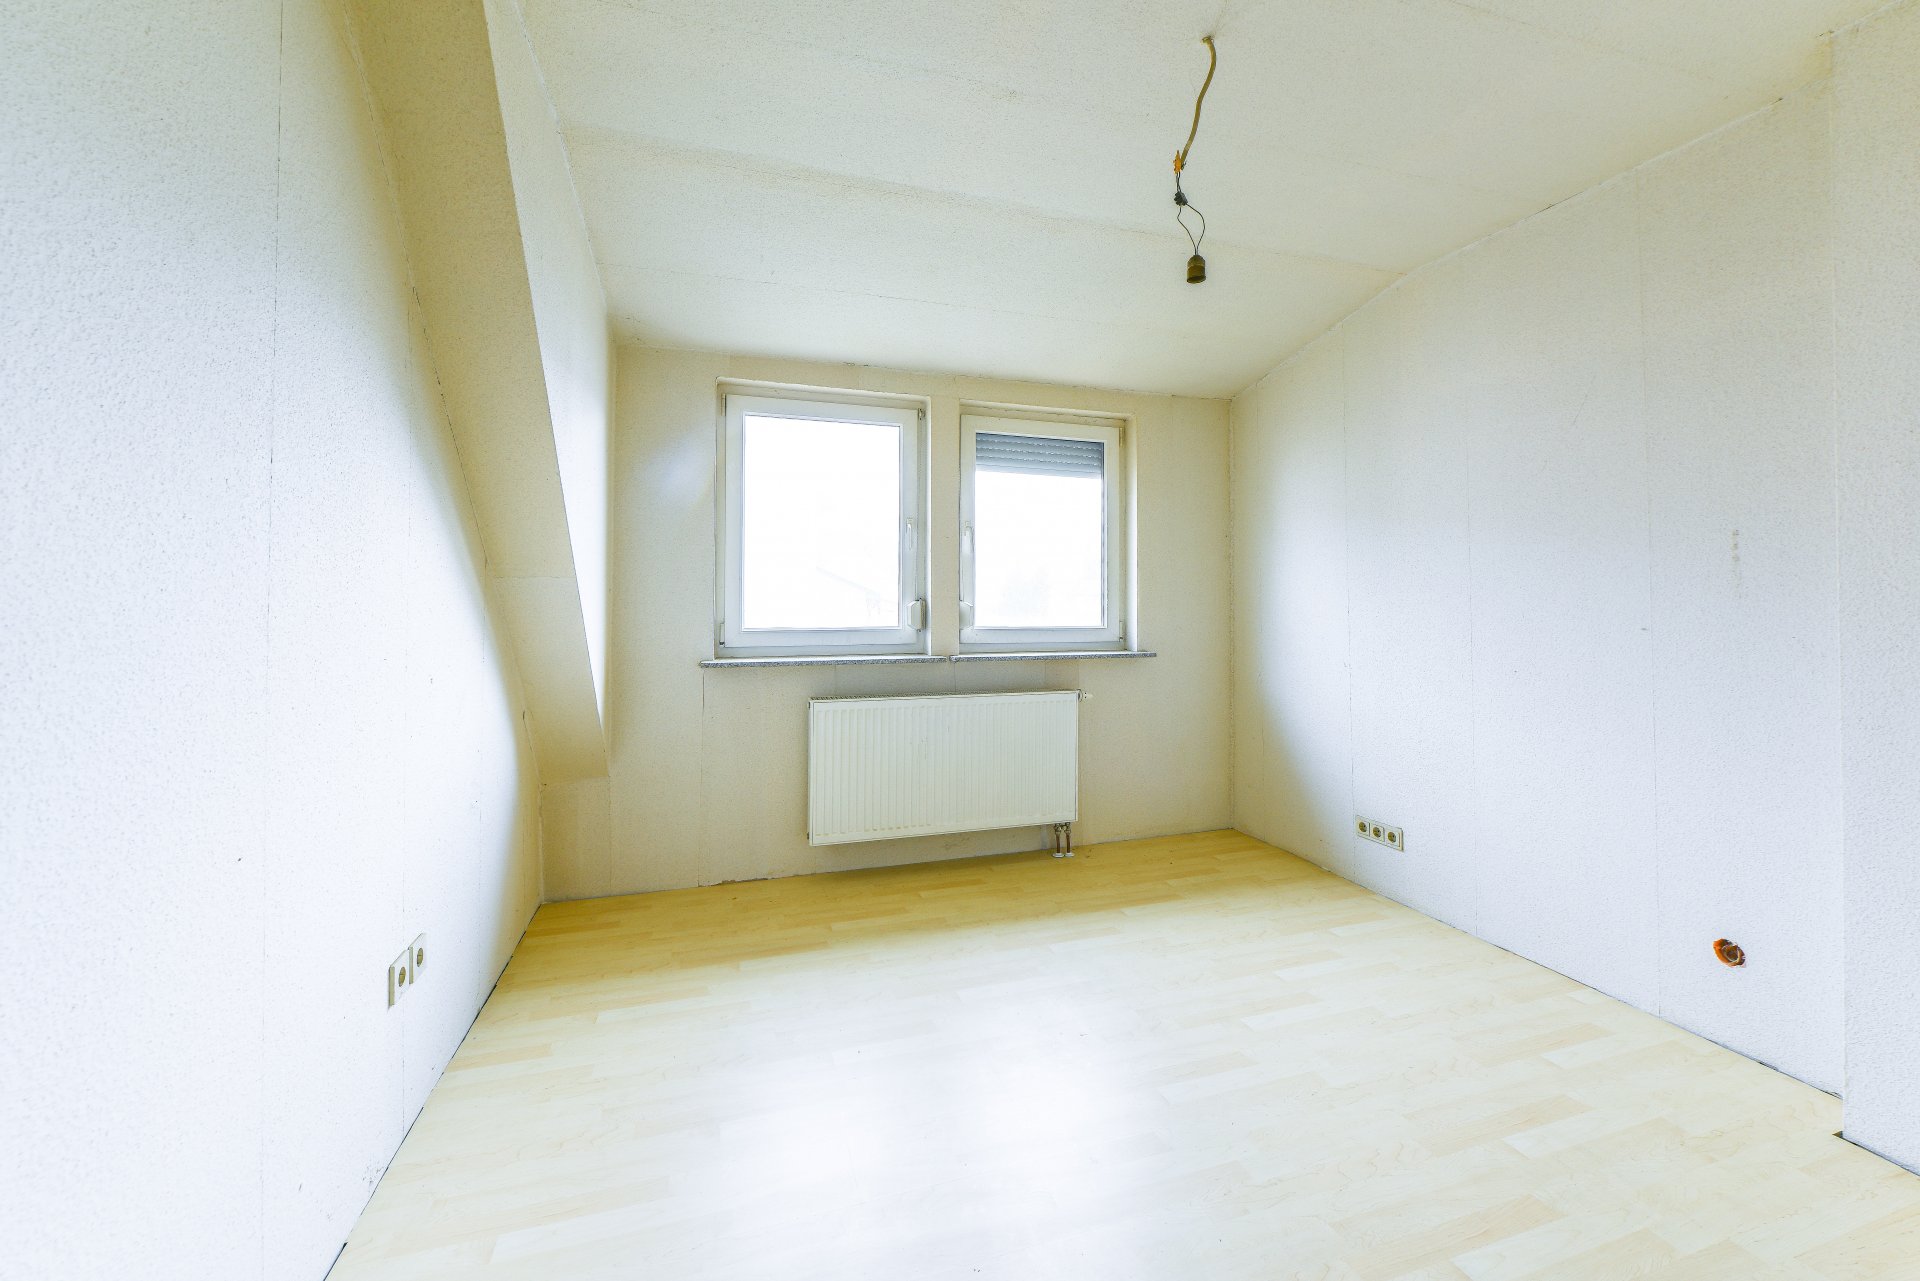 Schlafzimmer in der Dachgaupe - Oliver Reifferscheid - Immobilienmakler Darmstadt